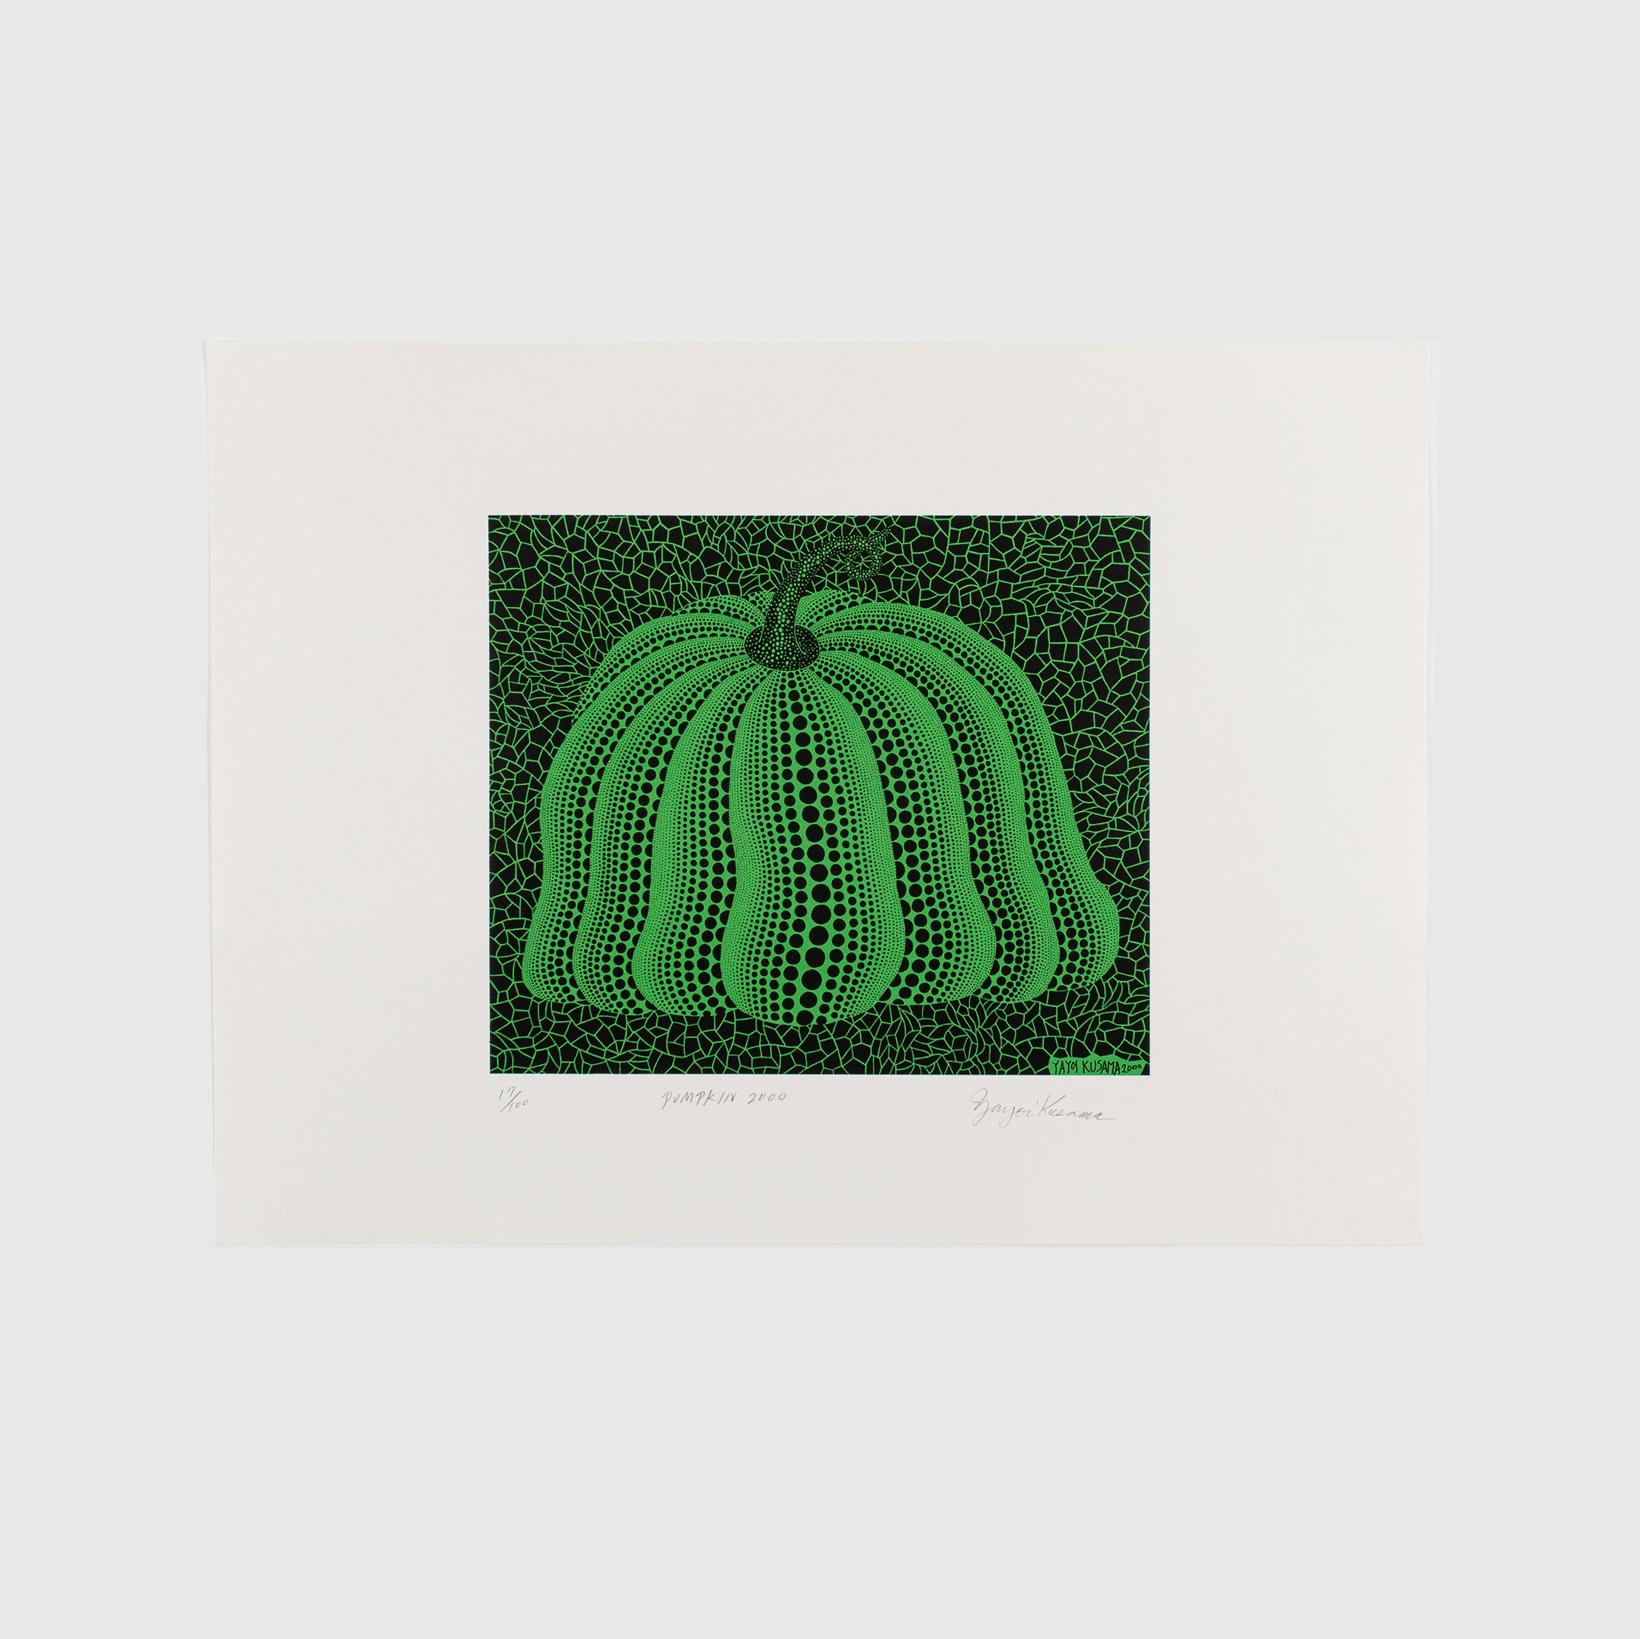 Yayoi Kusama, Pumpkin 2000 (Green)